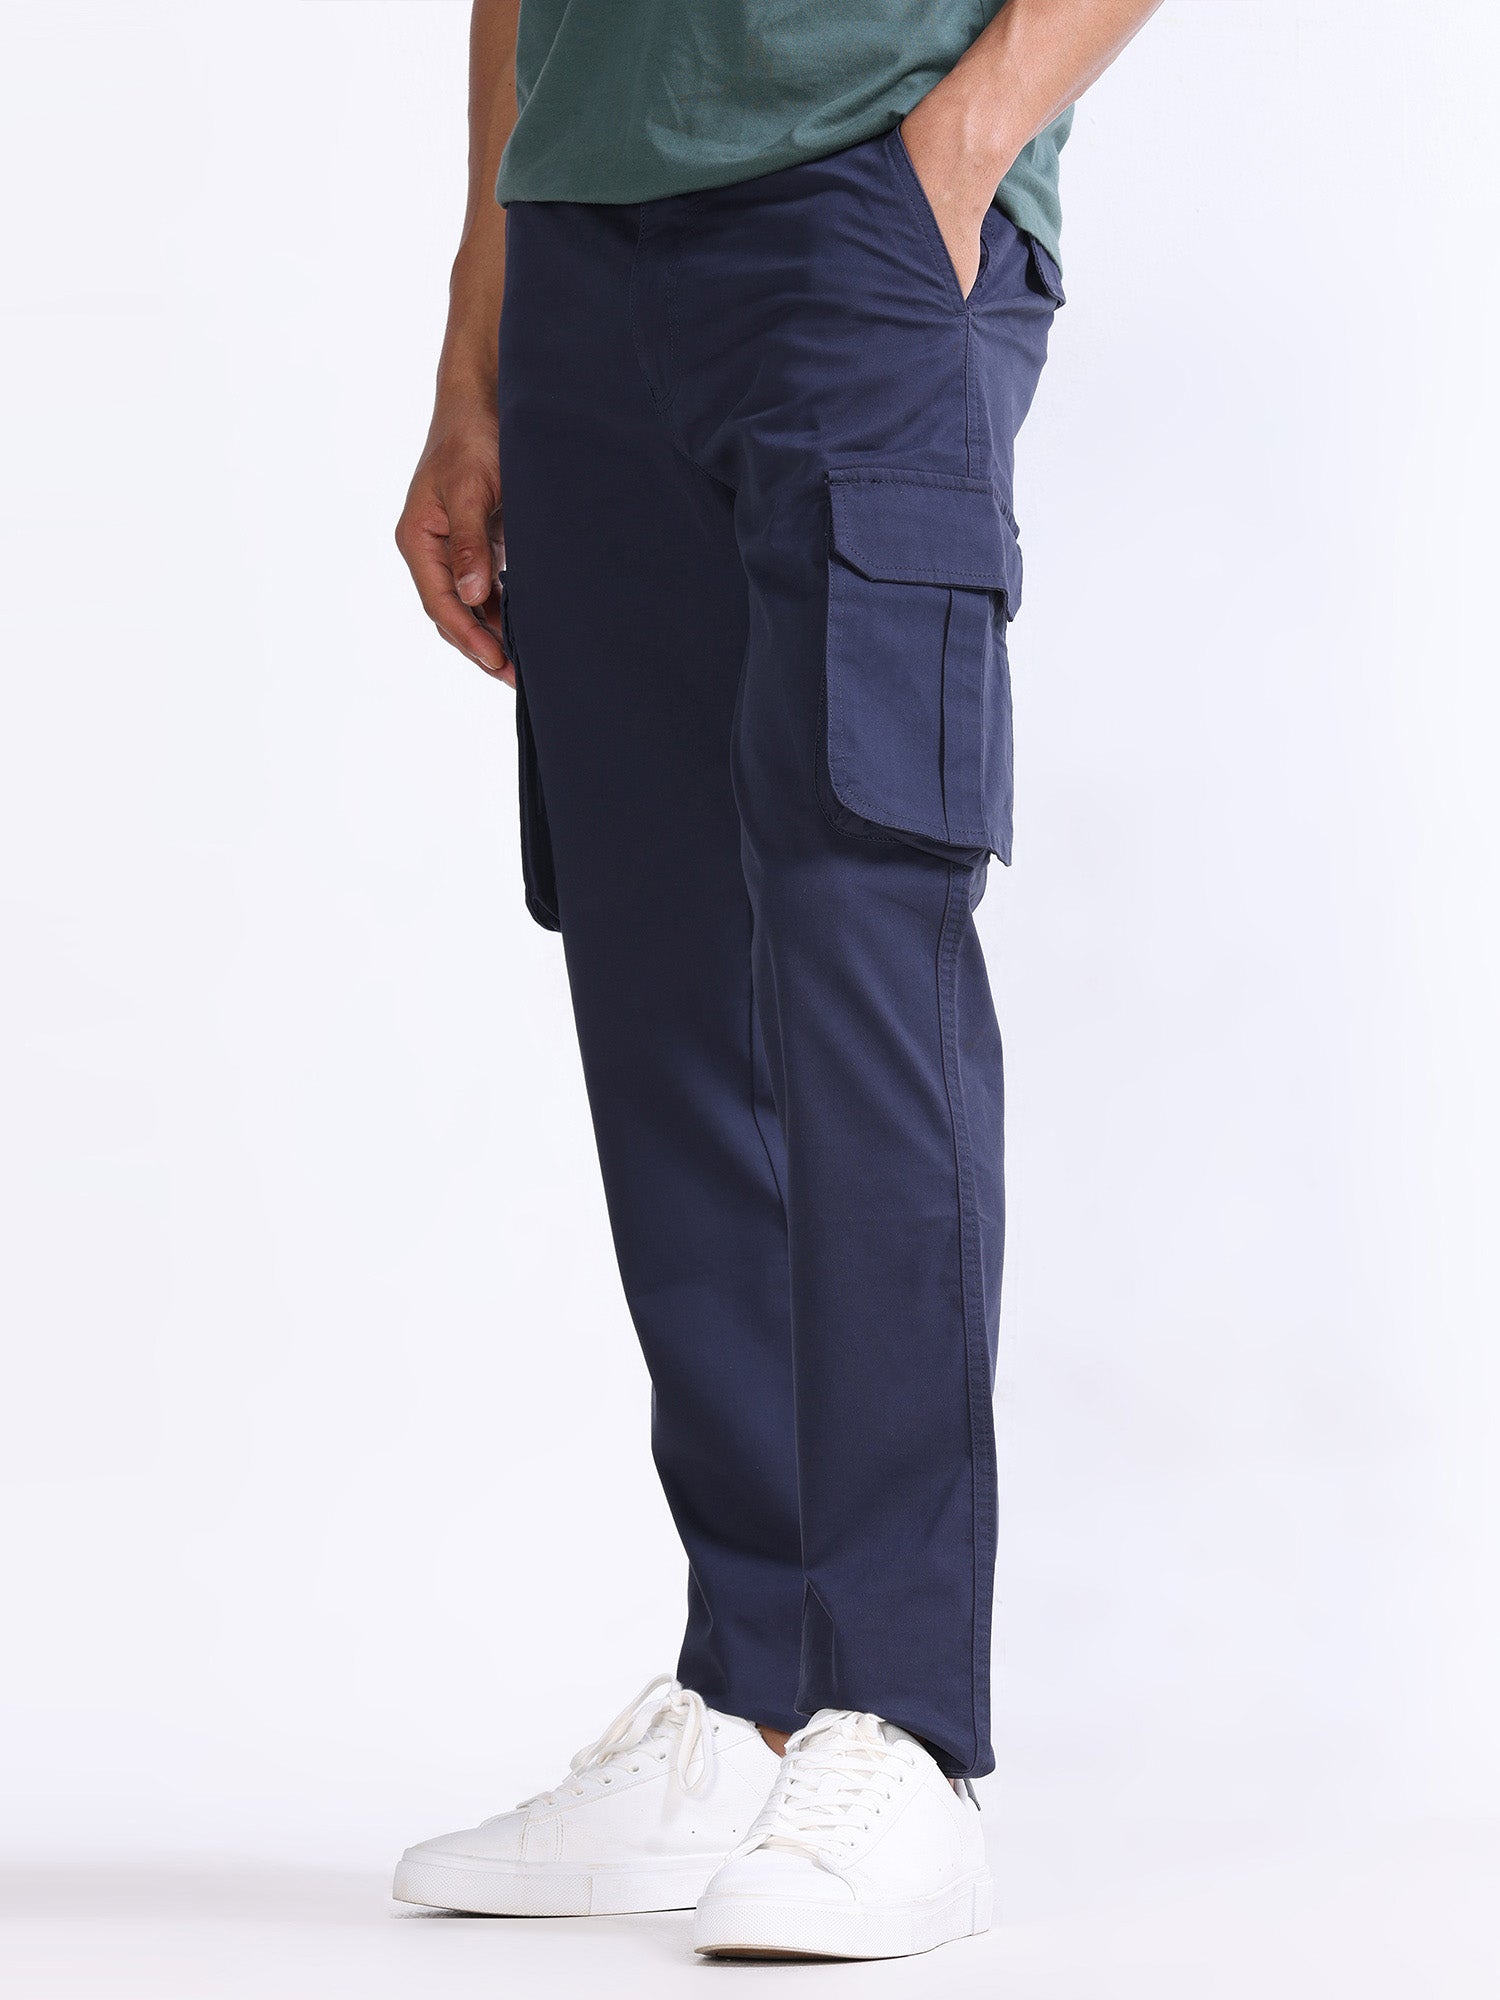 Buy trendy navy blue cargo pants online in india